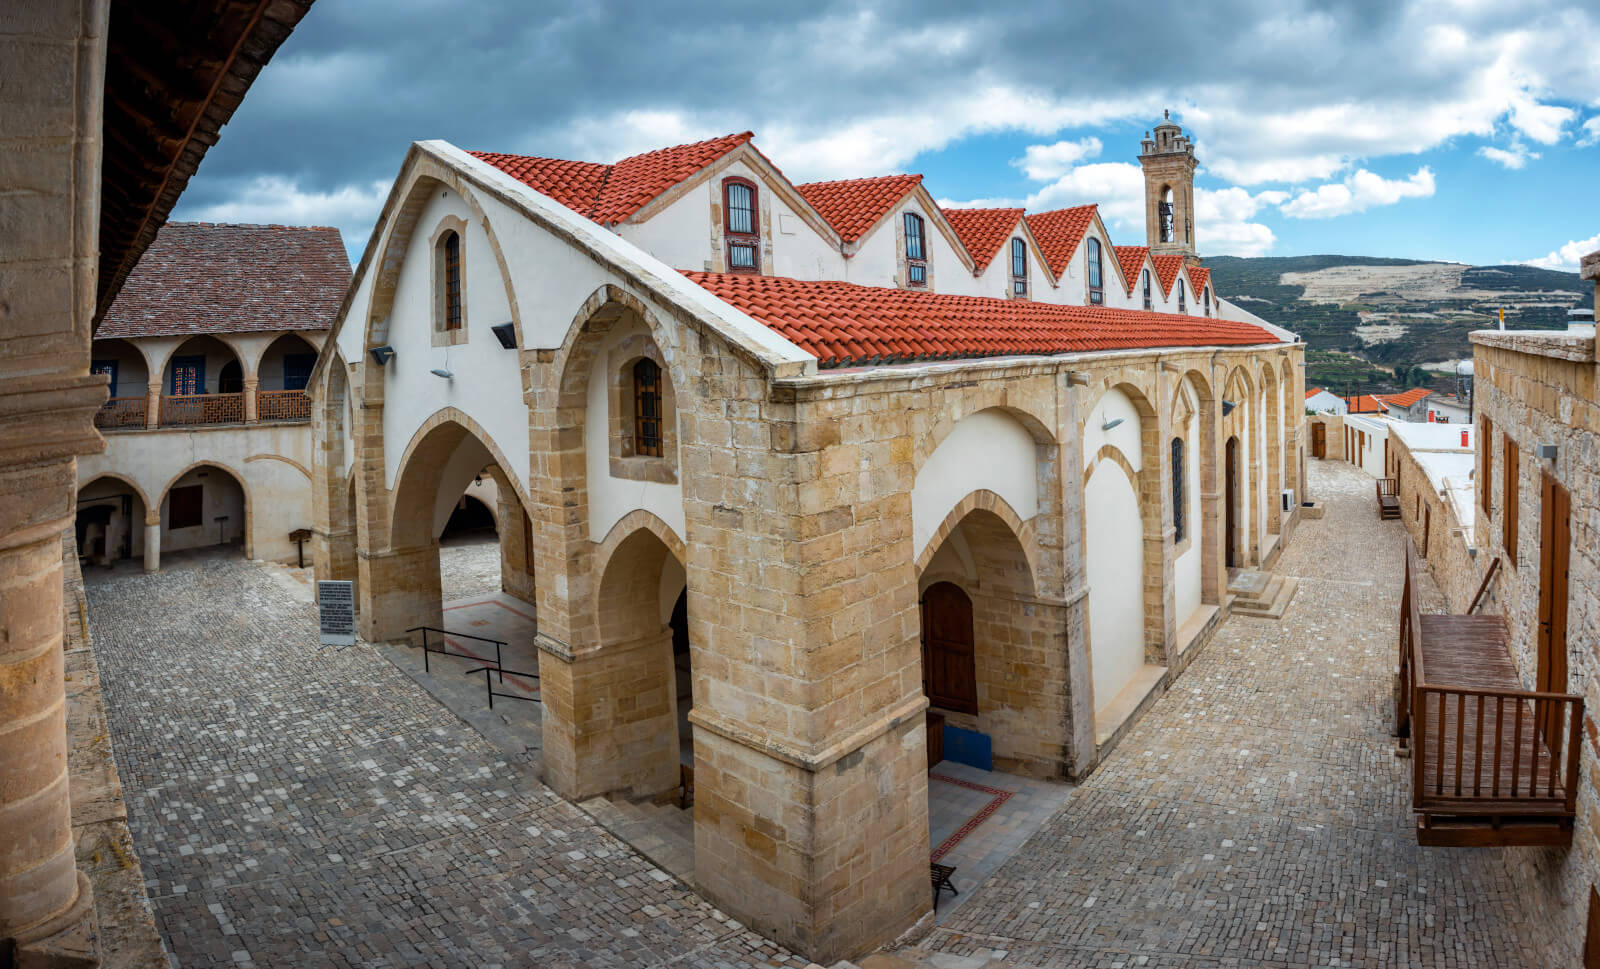 Timios Stavros monastery